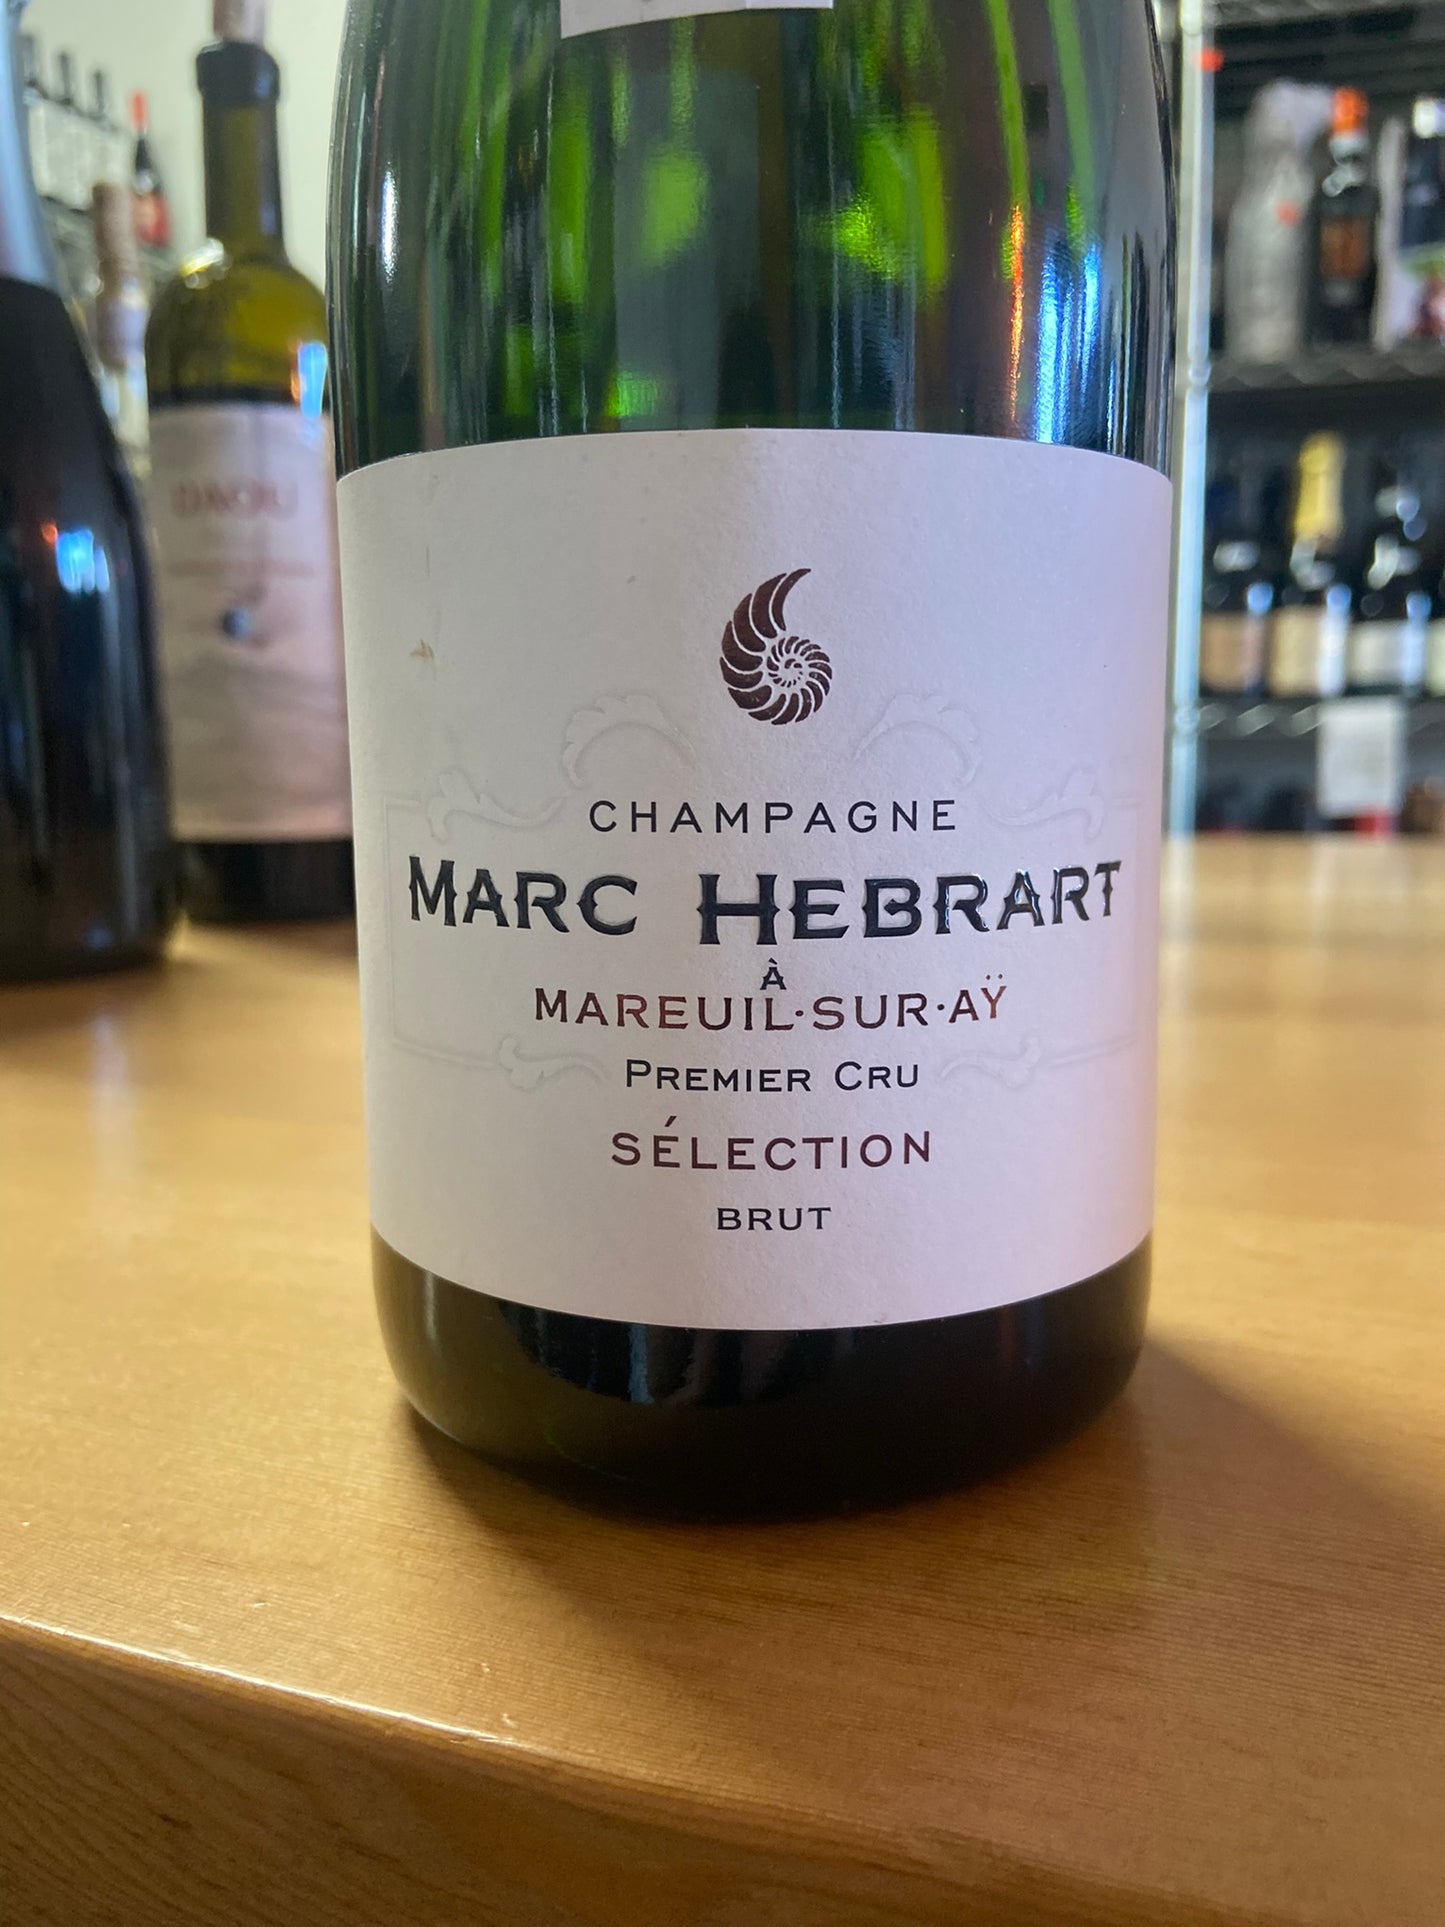 MARC HEBRART NV Champagne 'Premier Cru Selection Brut' (Champagne, France)